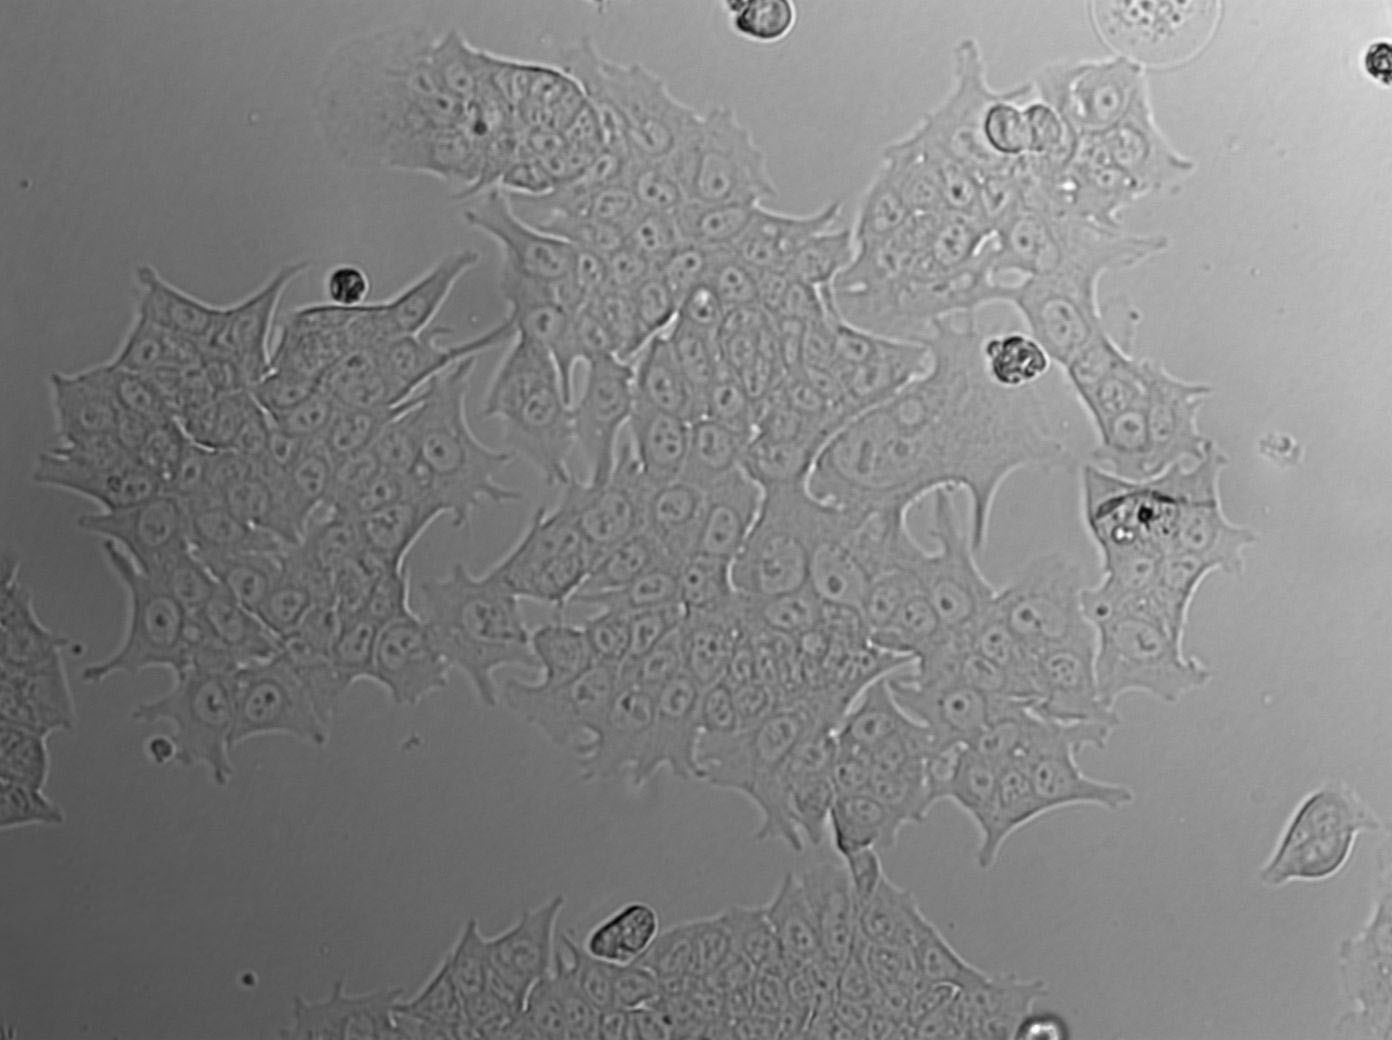 KMB-17 Cell|人二倍体细胞